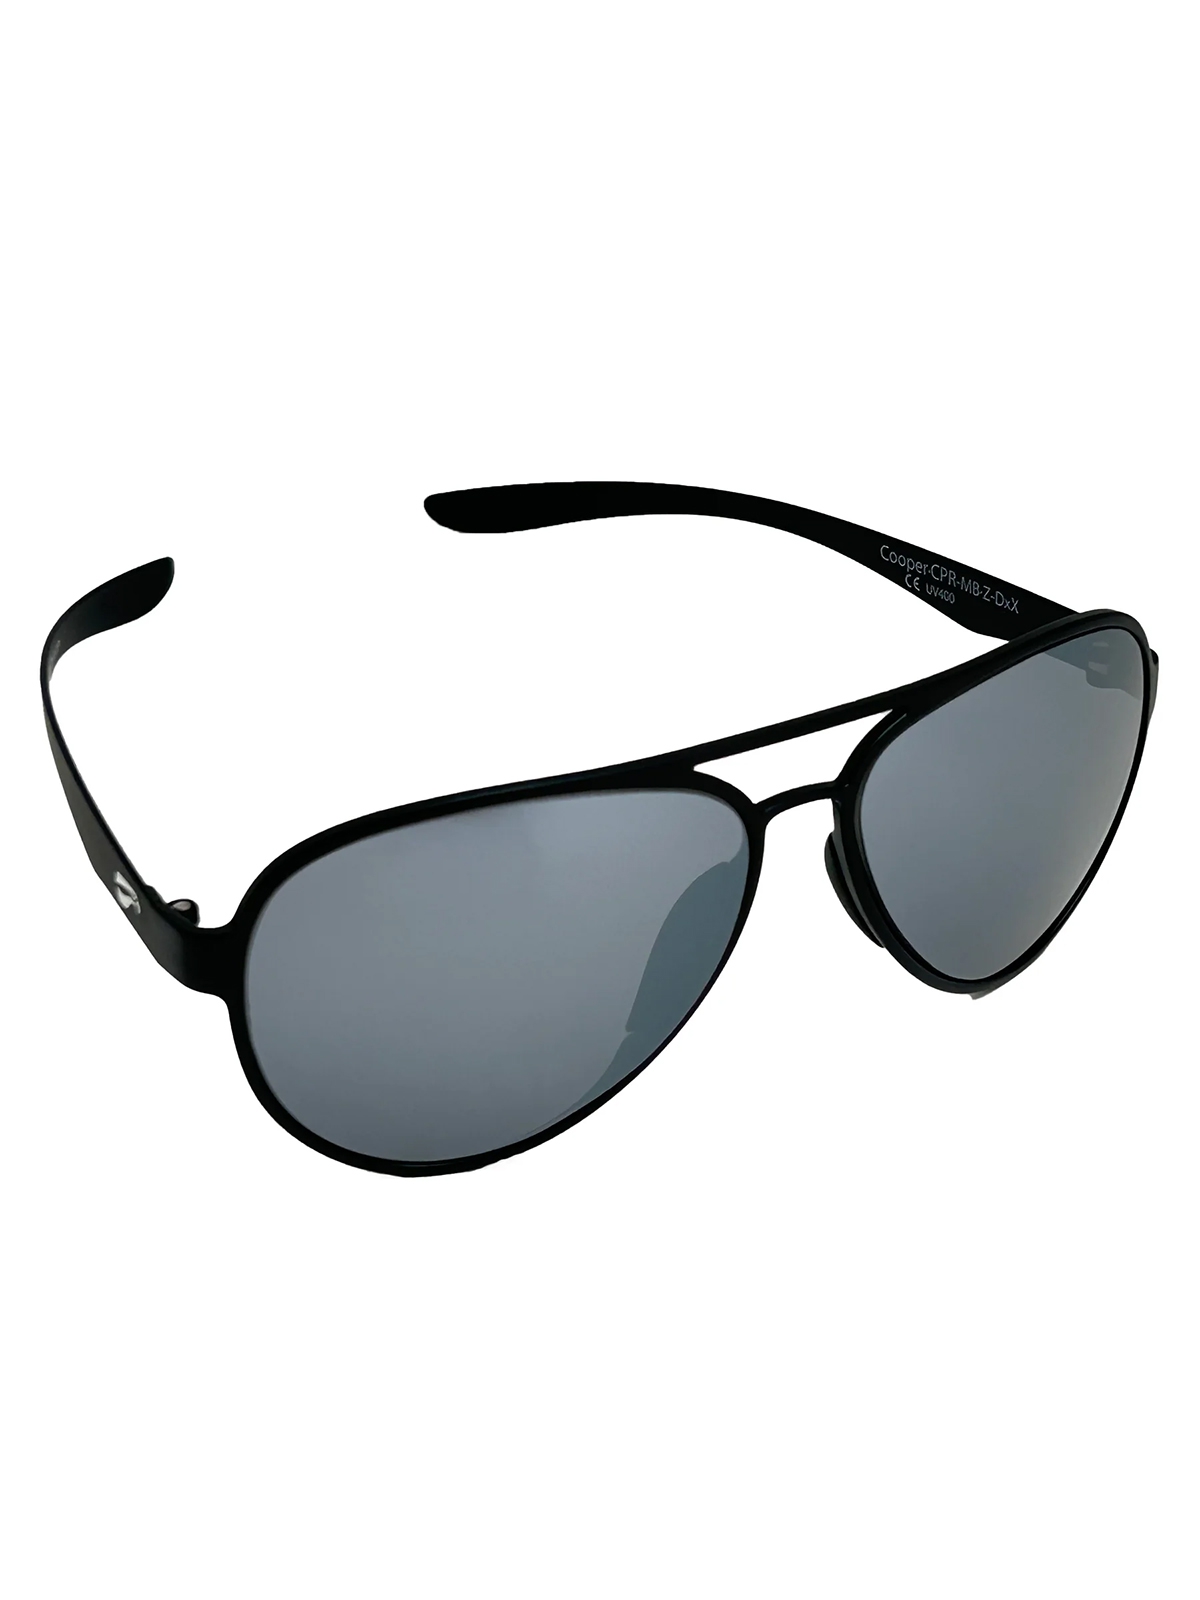 Flying Eyes Sonnenbrille Cooper Aviator - Rahmen matt schwarz, Linsen onyxfarben (verspiegelt)